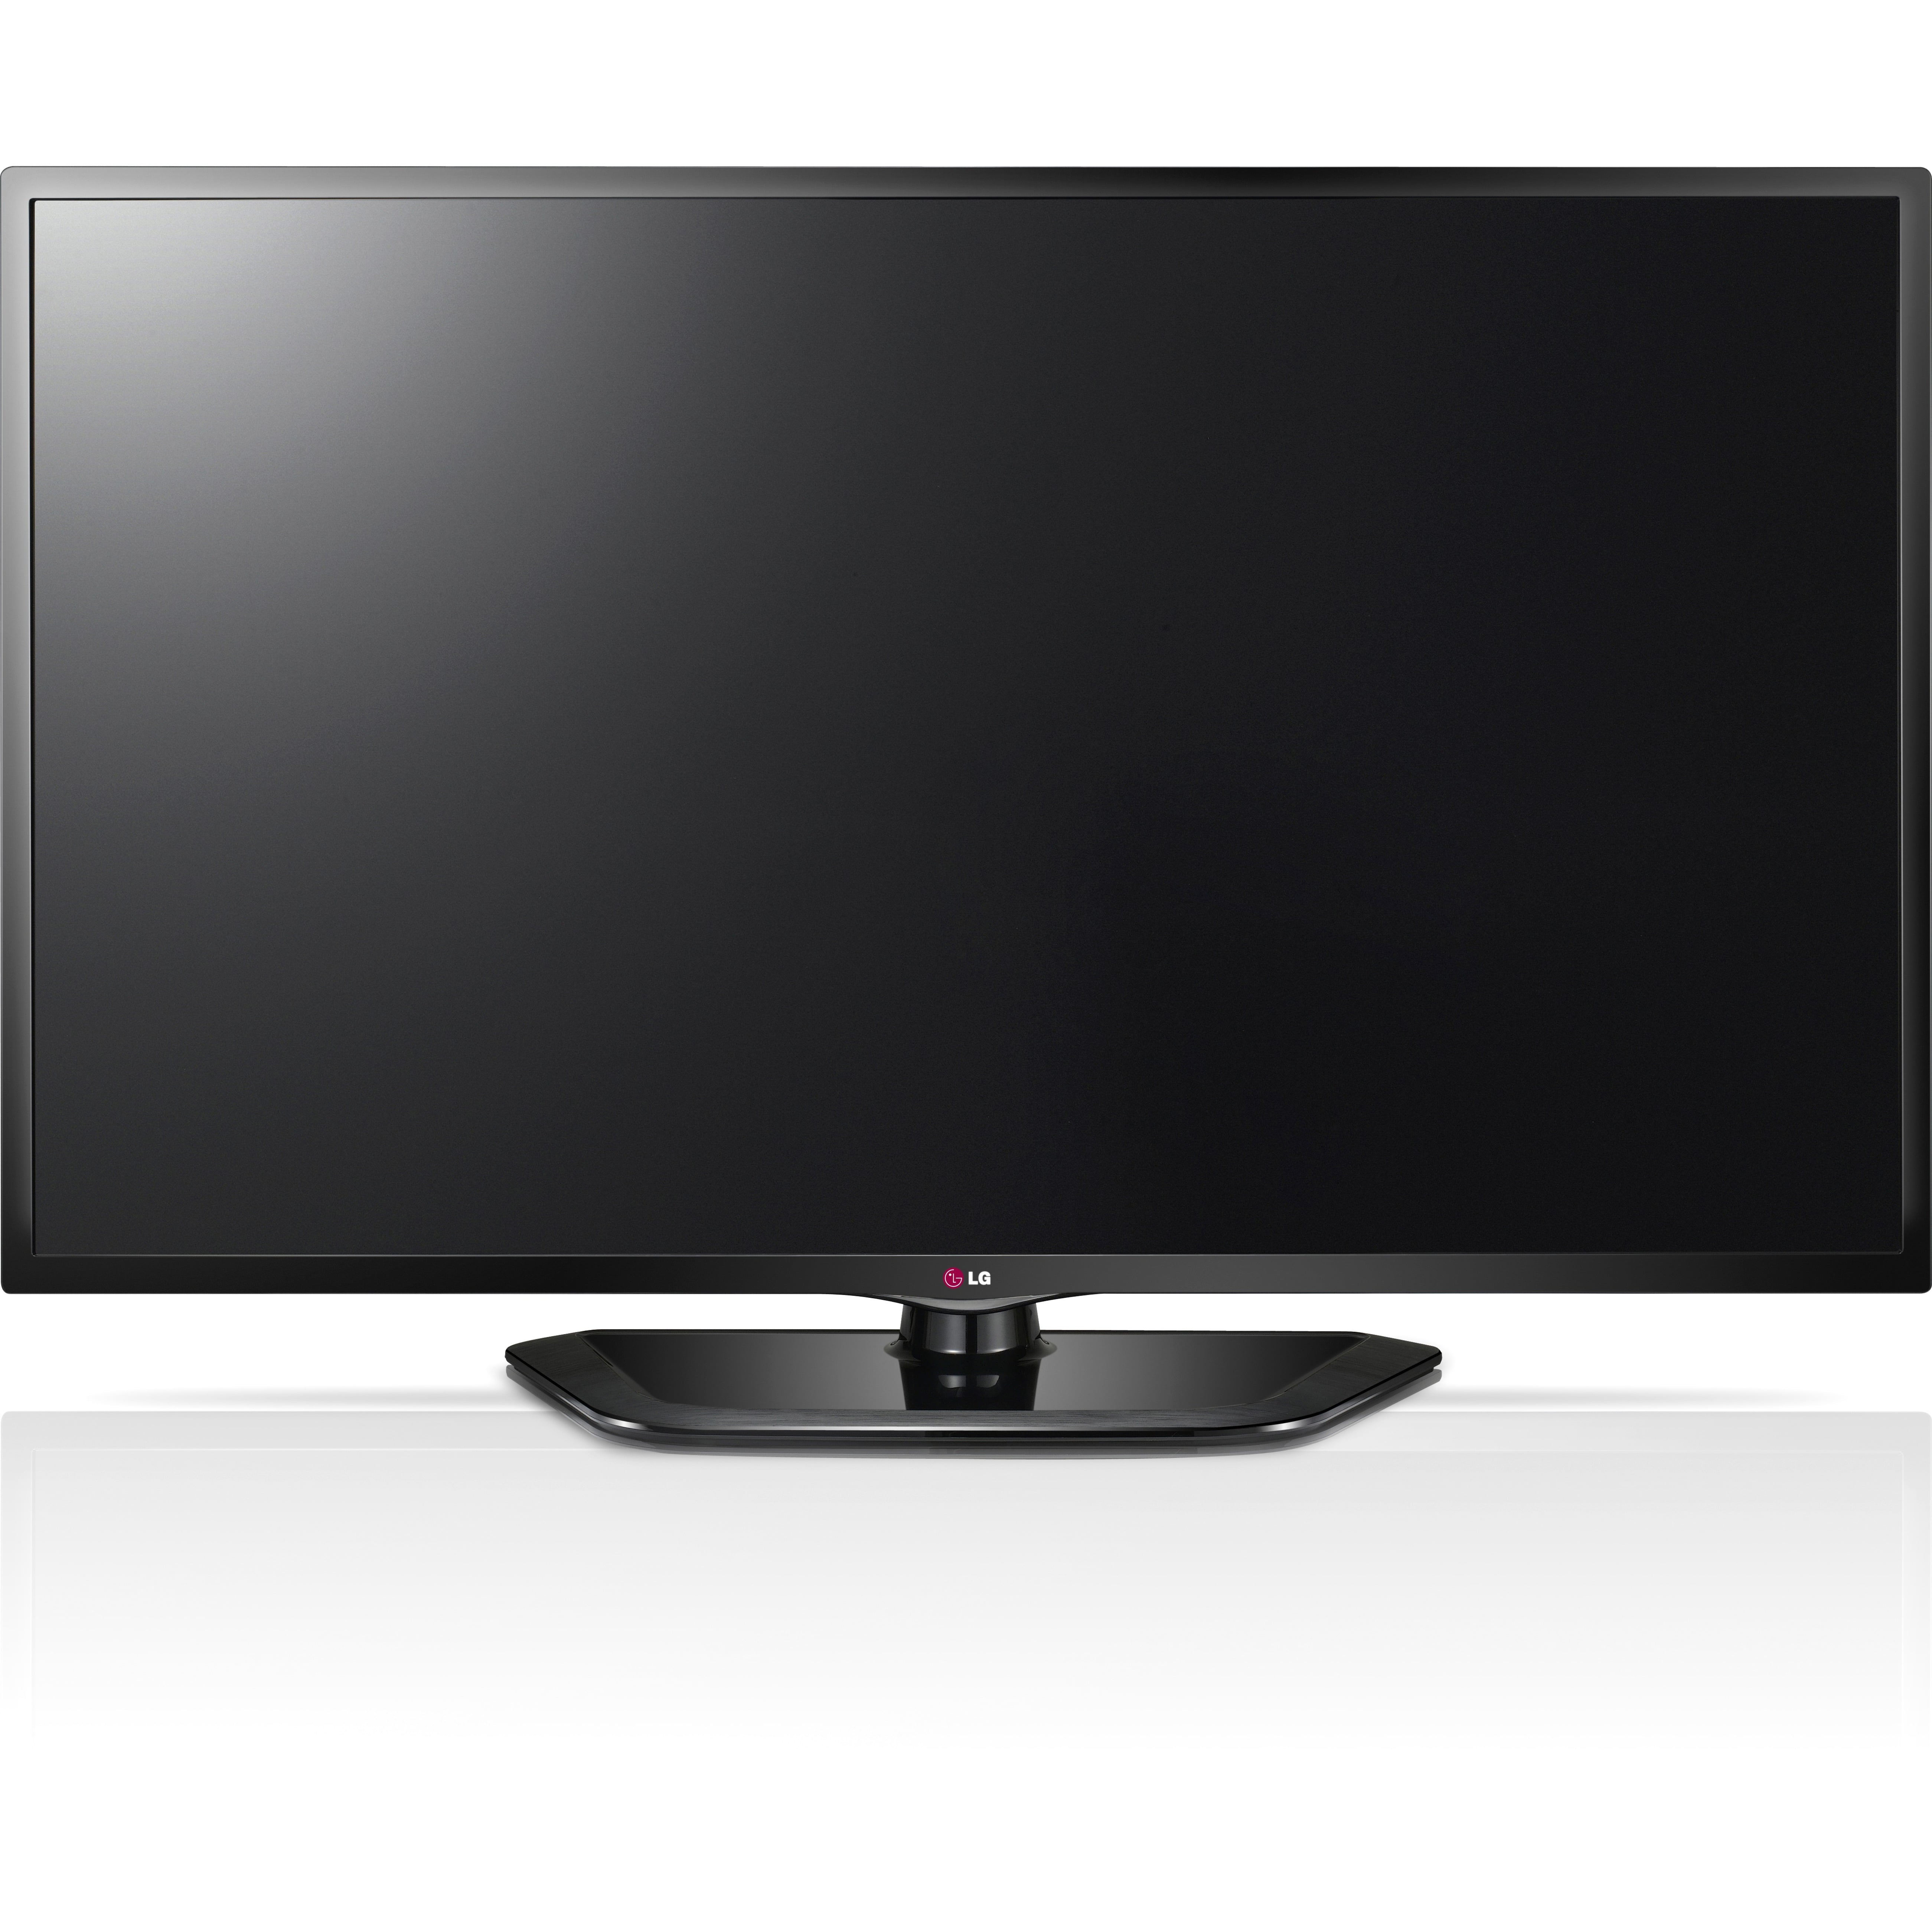 Телевизор lg 32 см. LG 47ld750. Телевизор LG 37lg6000 37". LG Smart TV 42 дюйма. Телевизор LG 42lh4900 42".